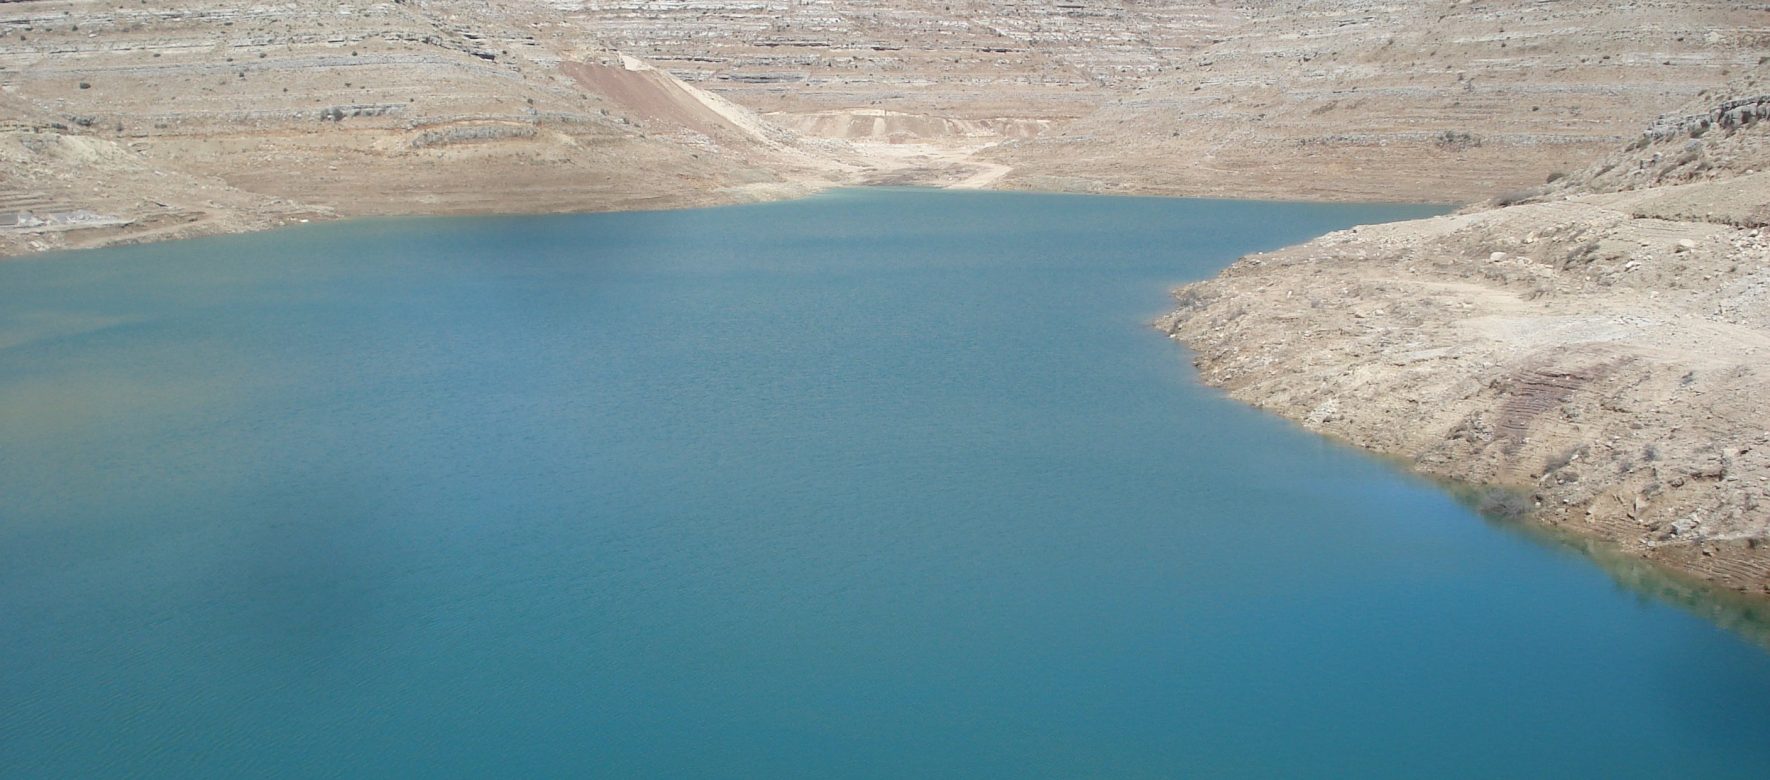 Liban : lancement d’un projet d’amélioration de l’eau potable